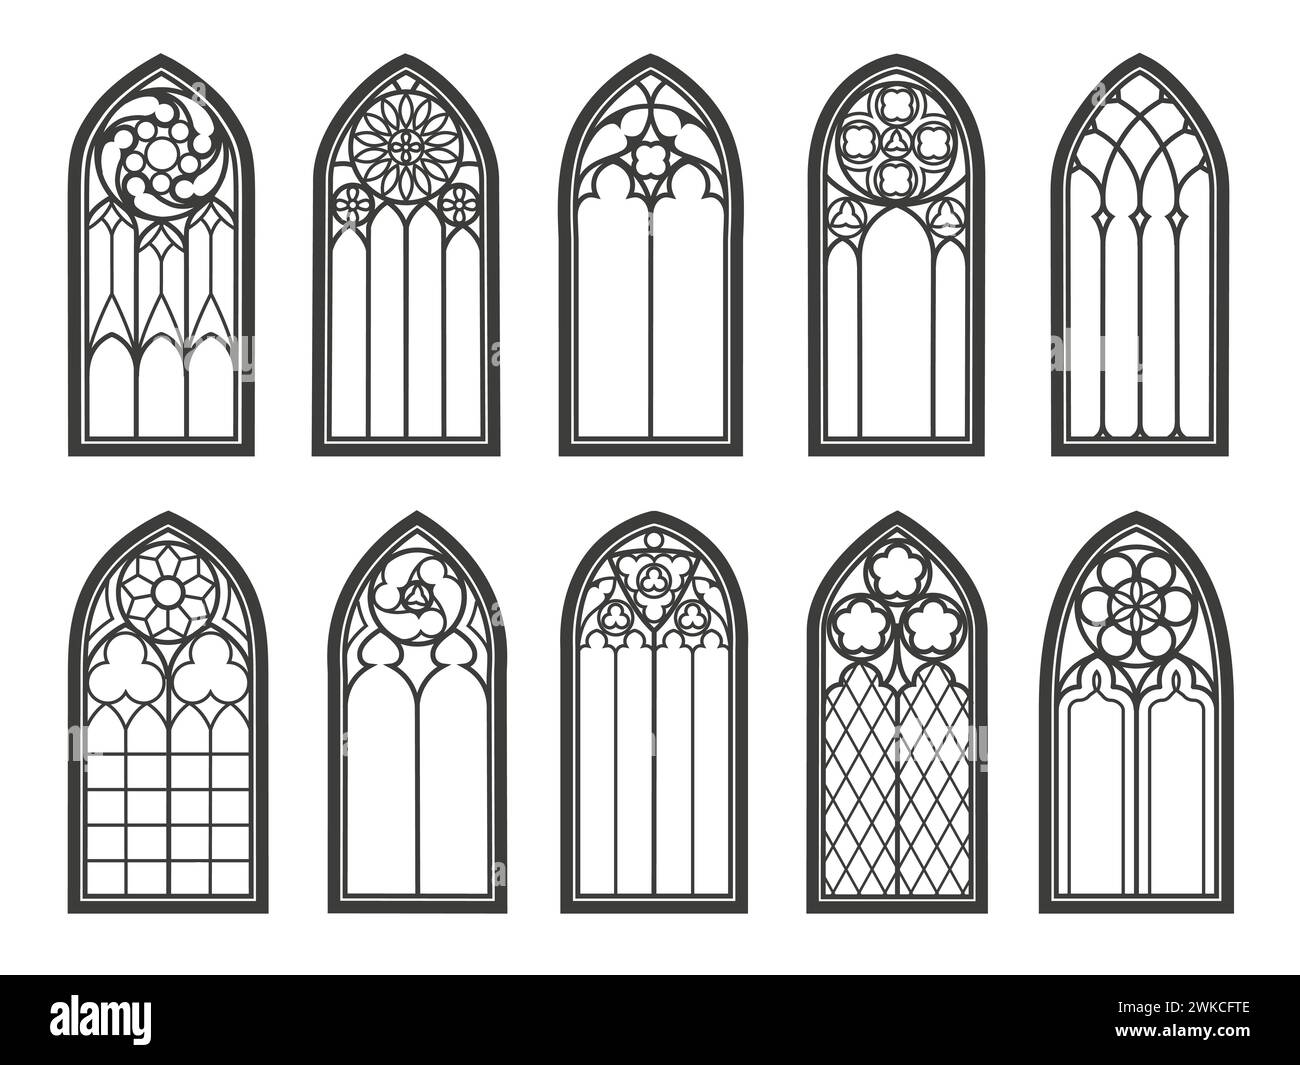 Chiesa gotica medievale, finestre in vetro e archi di cattedrale, architettura vettoriale. Finestre gotiche d'epoca con vetrate colorate in arco o antico tempio e finestre rinascimentali della chiesa Illustrazione Vettoriale